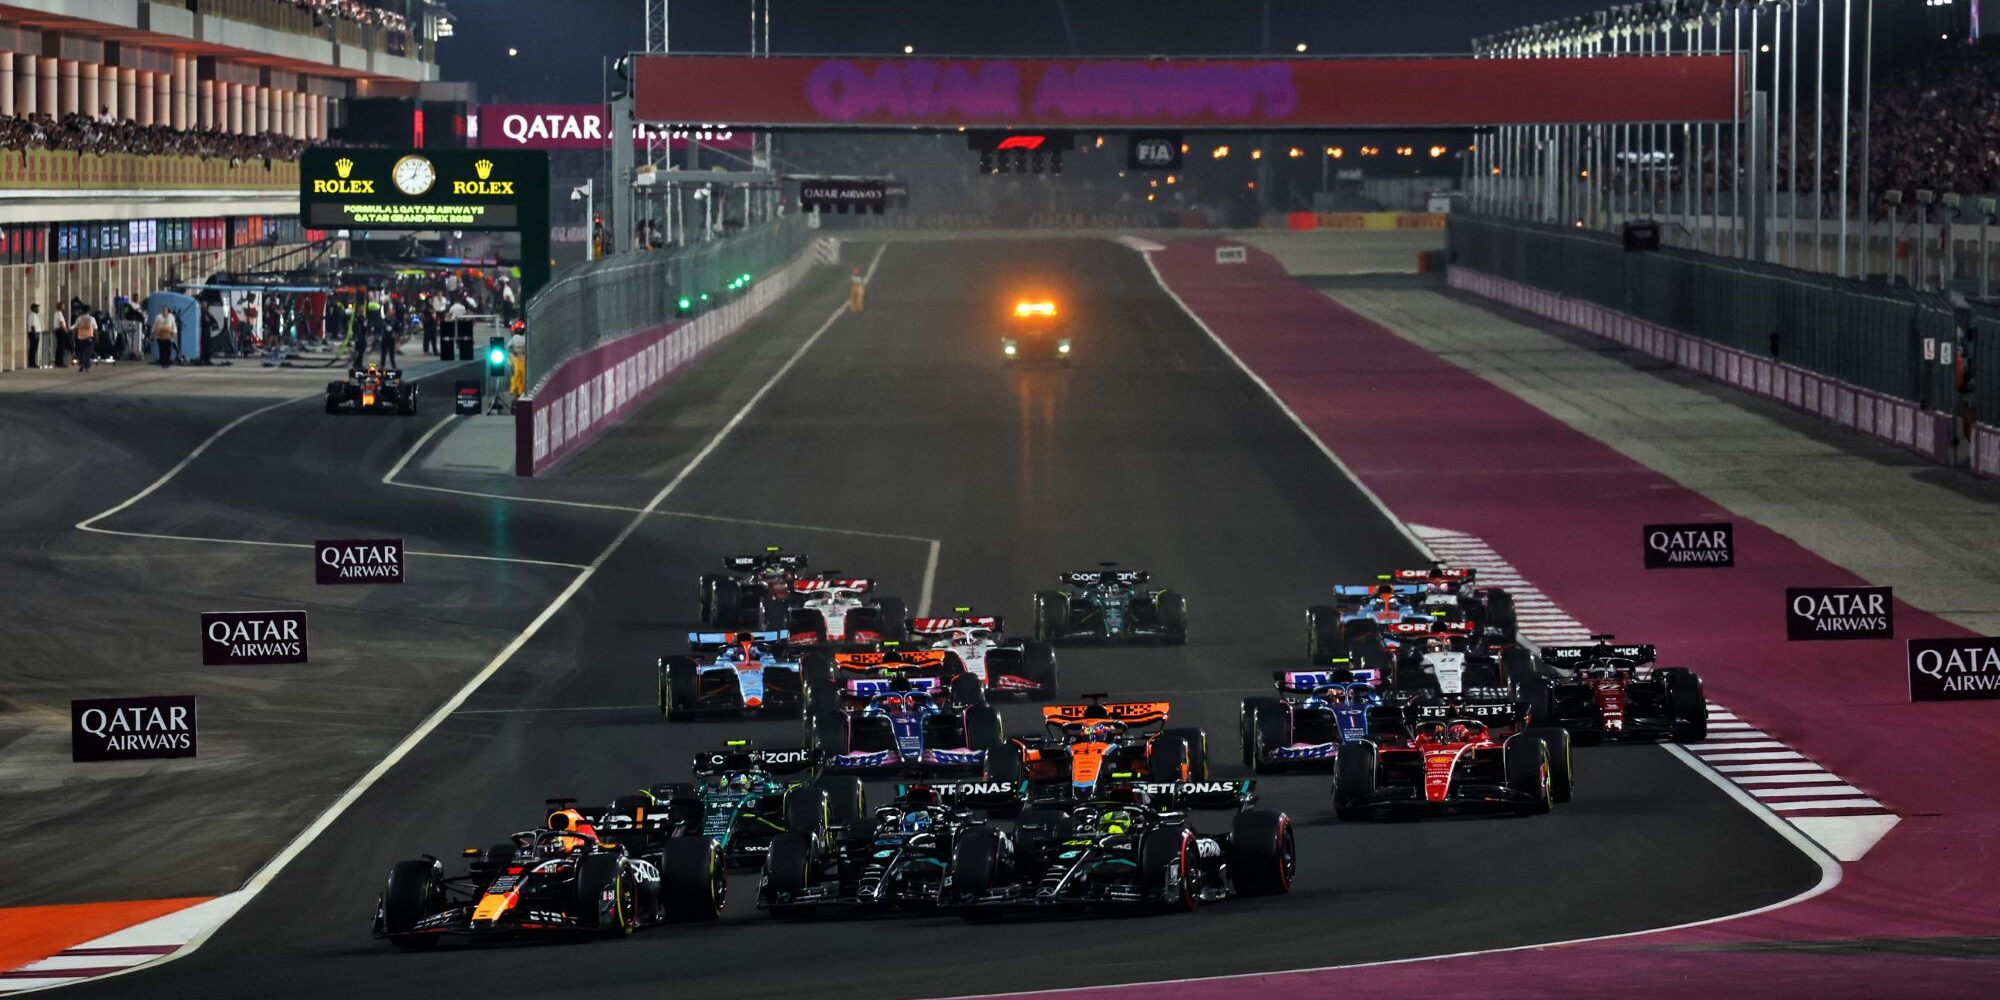 Grande Prémio de Fórmula 1 do Qatar